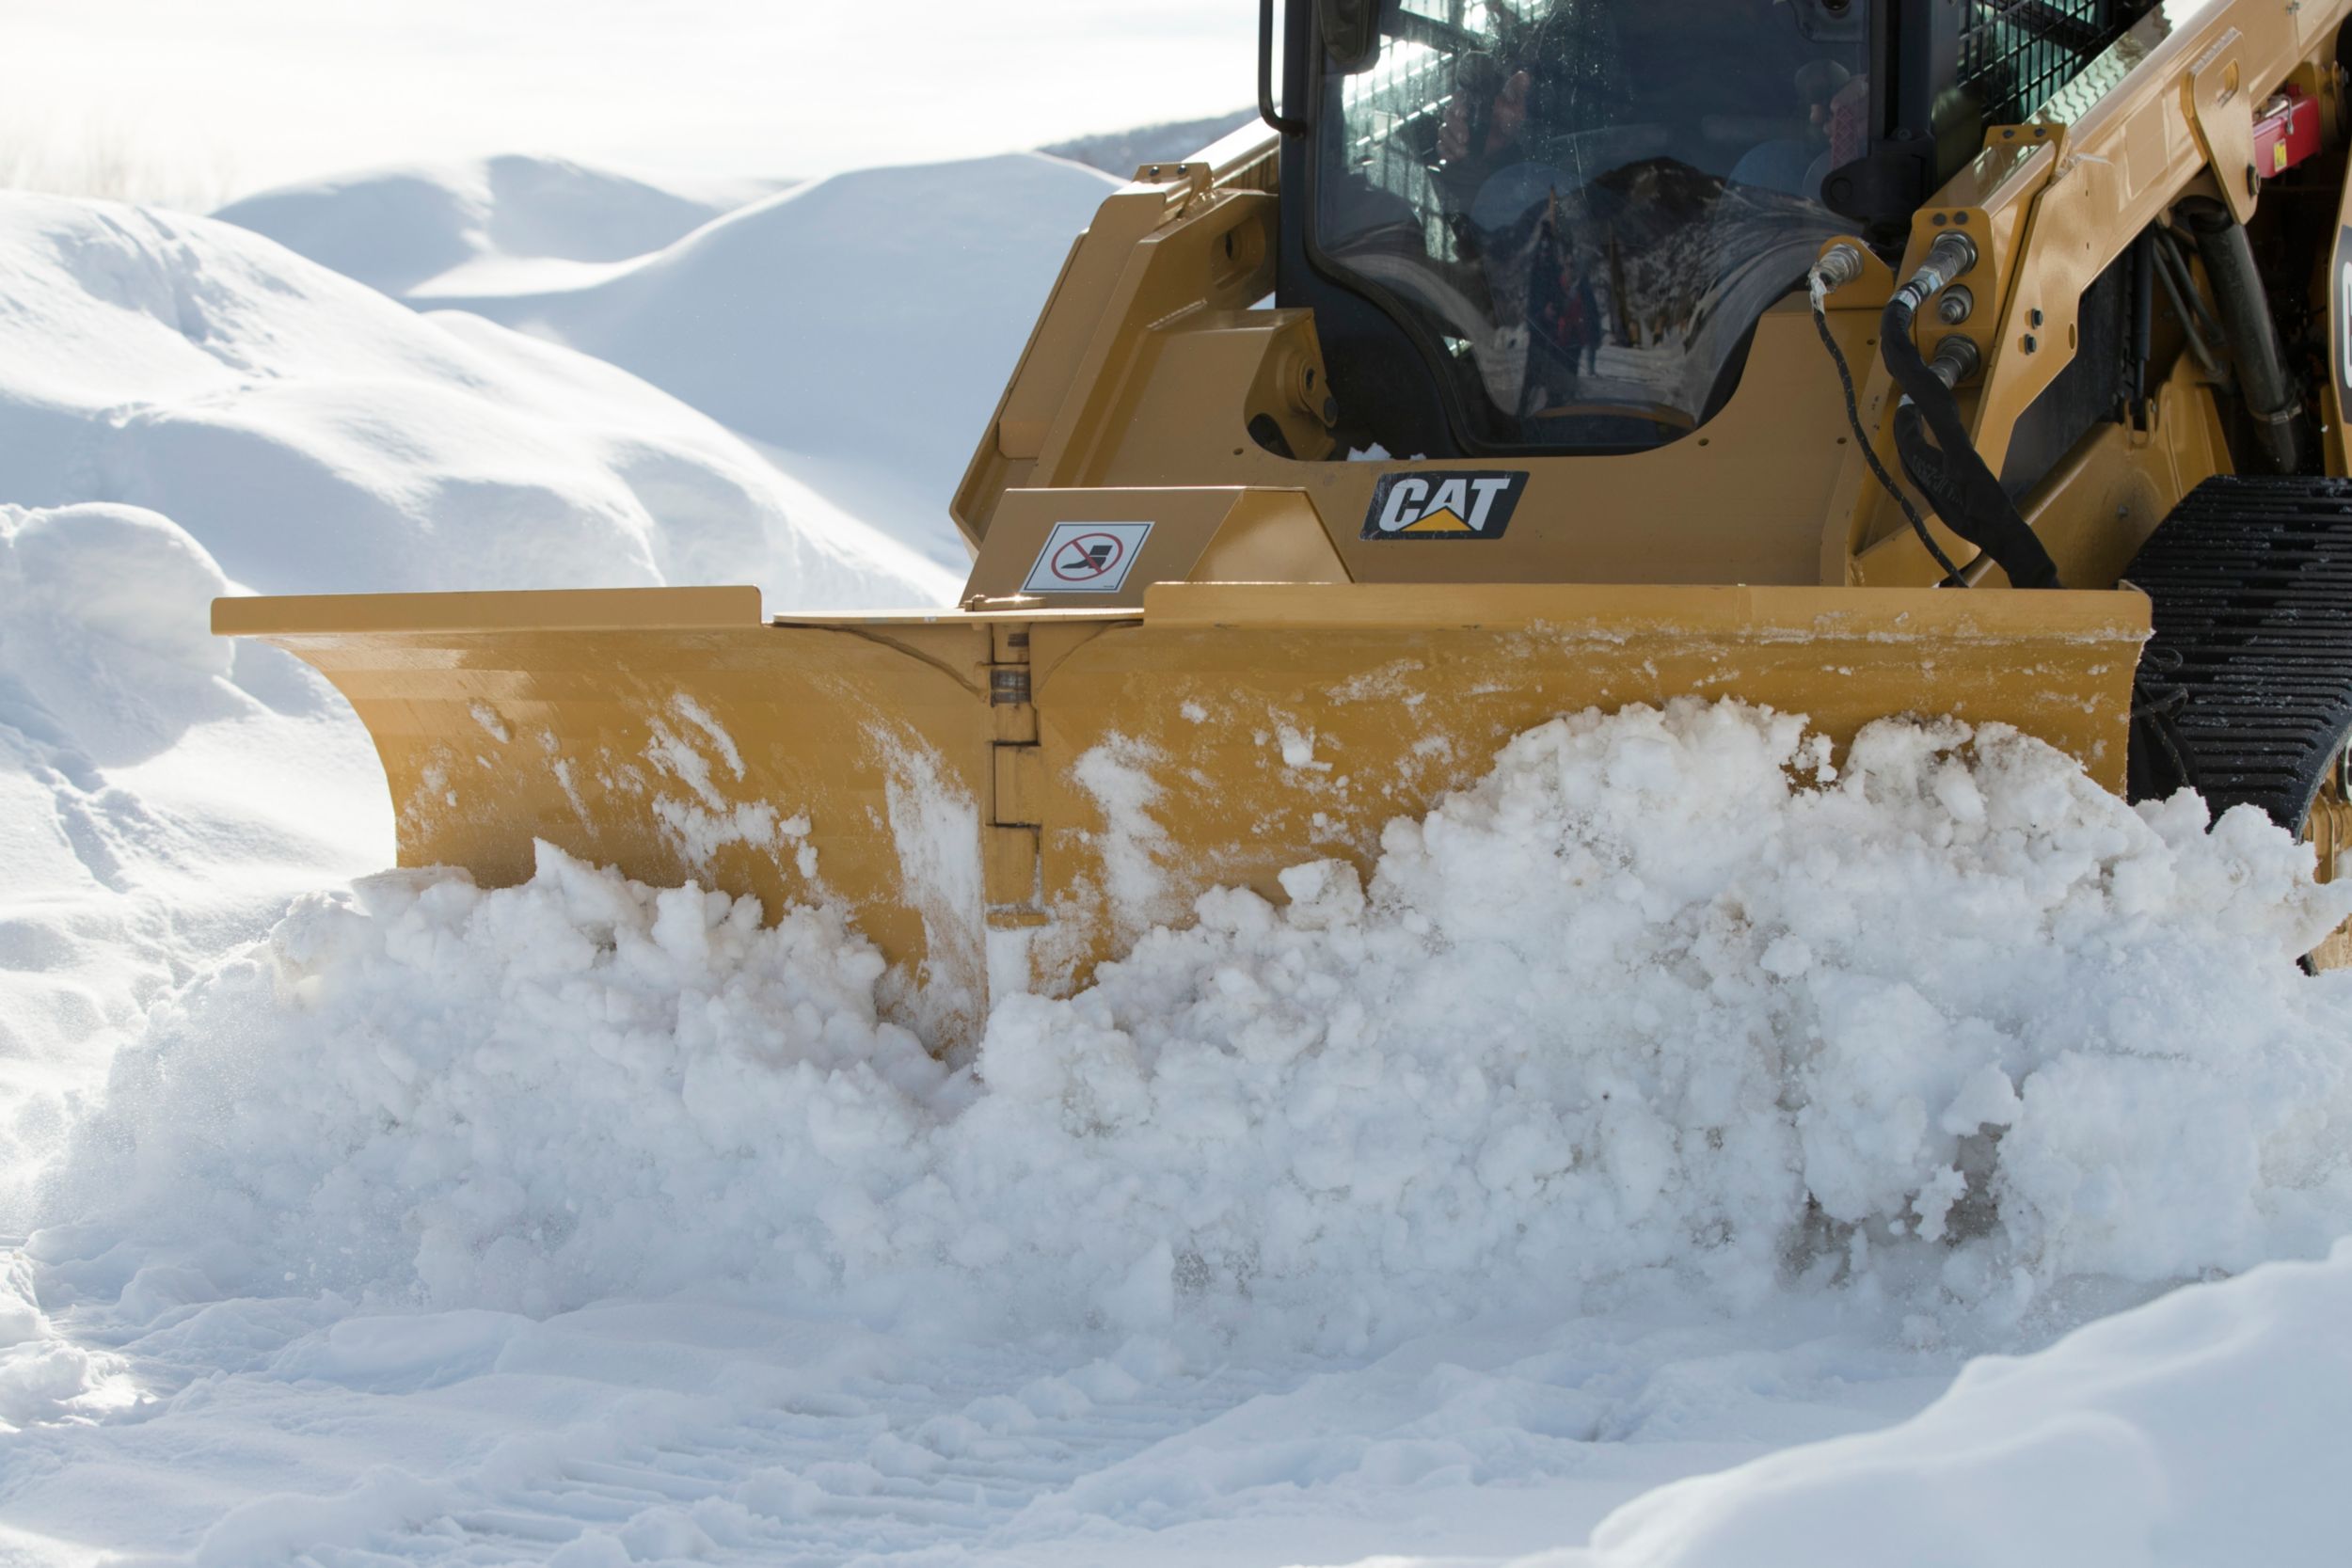 Pług wielozadaniowy typu V Cat przecinający śnieg